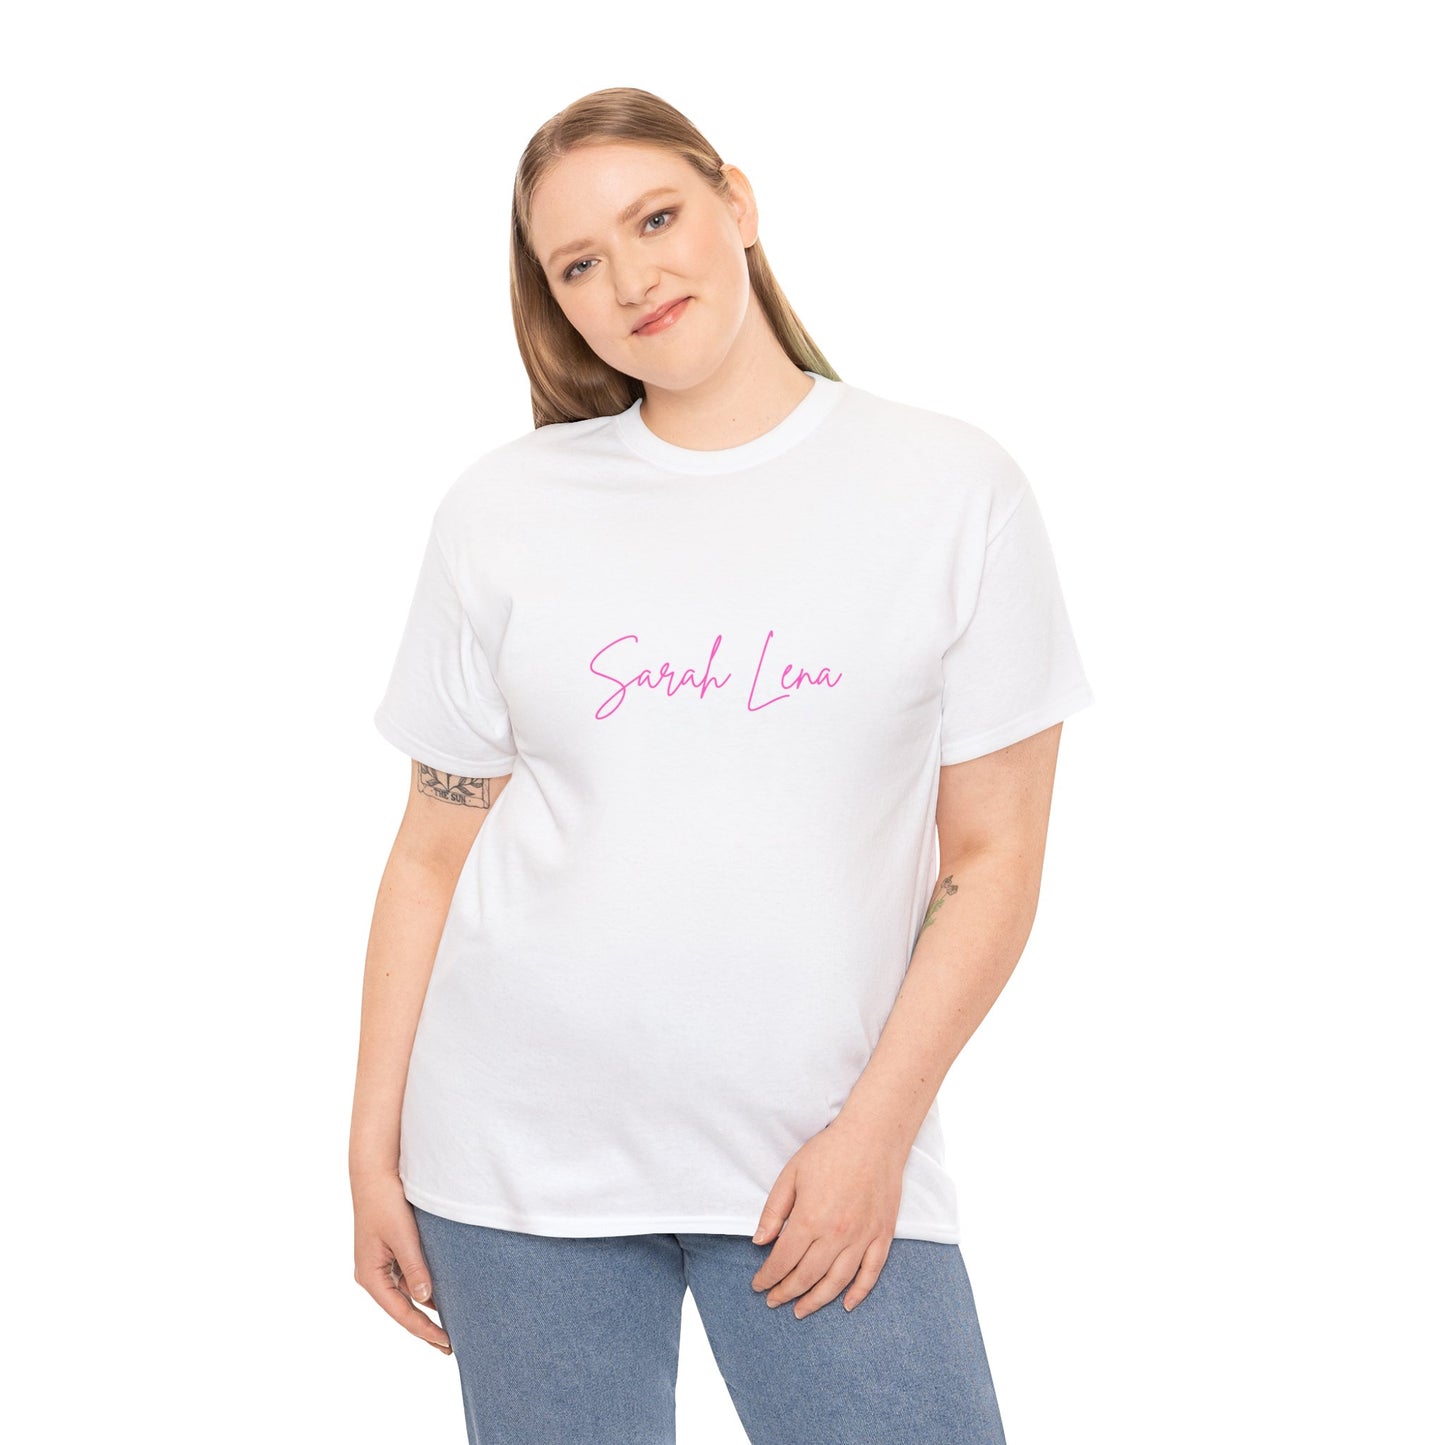 T-Shirt (m/w/d) aus hochwertiger Baumwolle im Sarah Lena Design